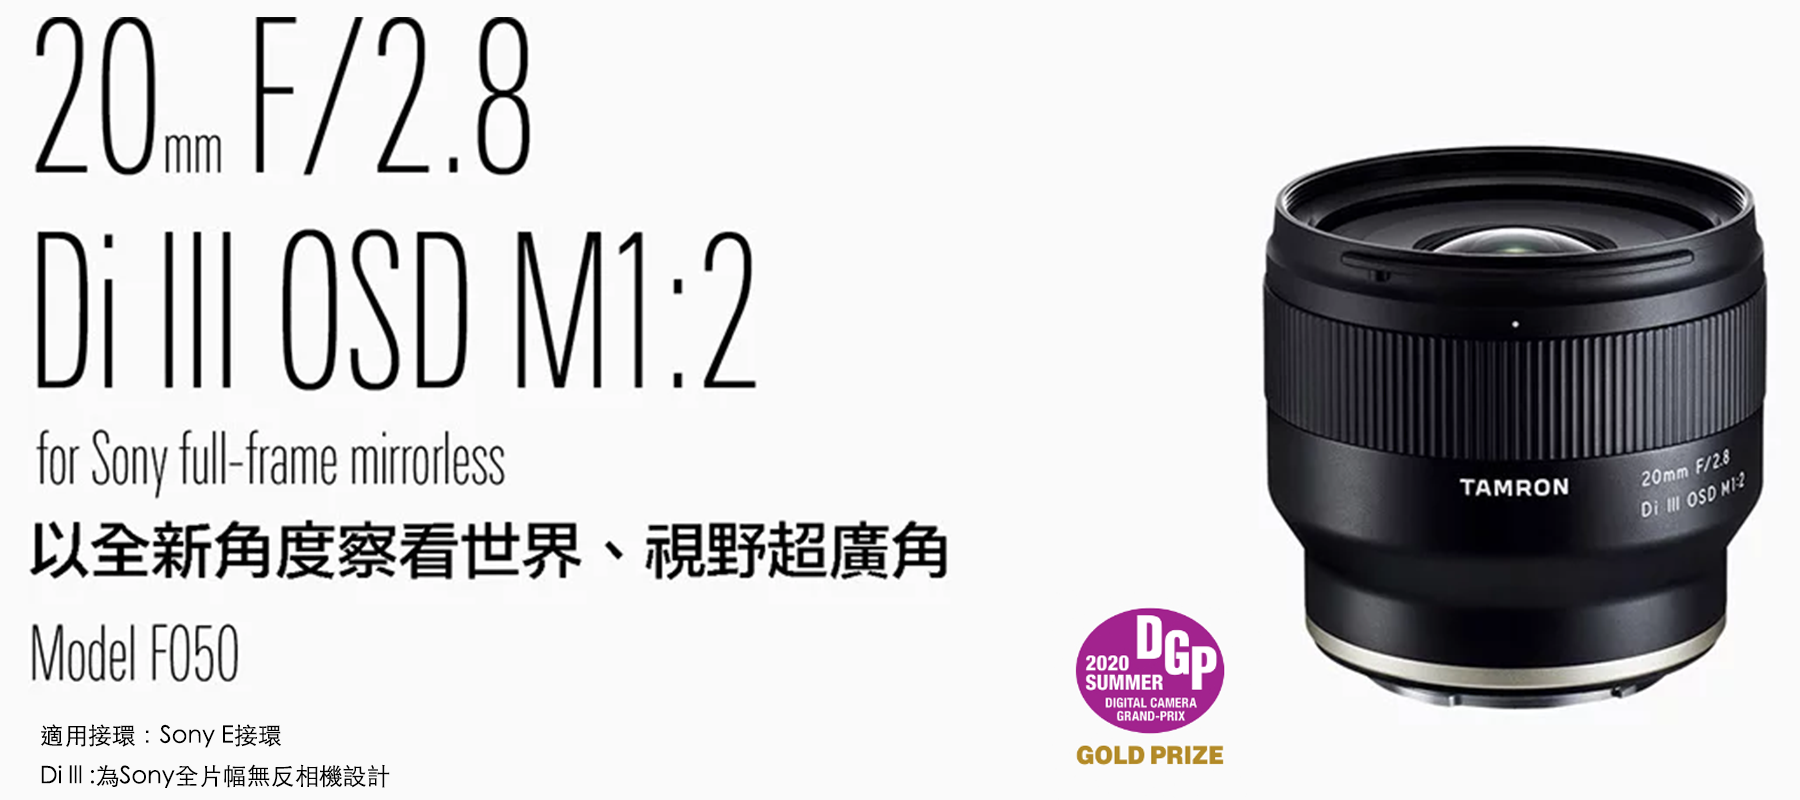 20mm F/2.8 Di III OSD M1:2 (Model F050) | TAMRON HK | 騰龍香港